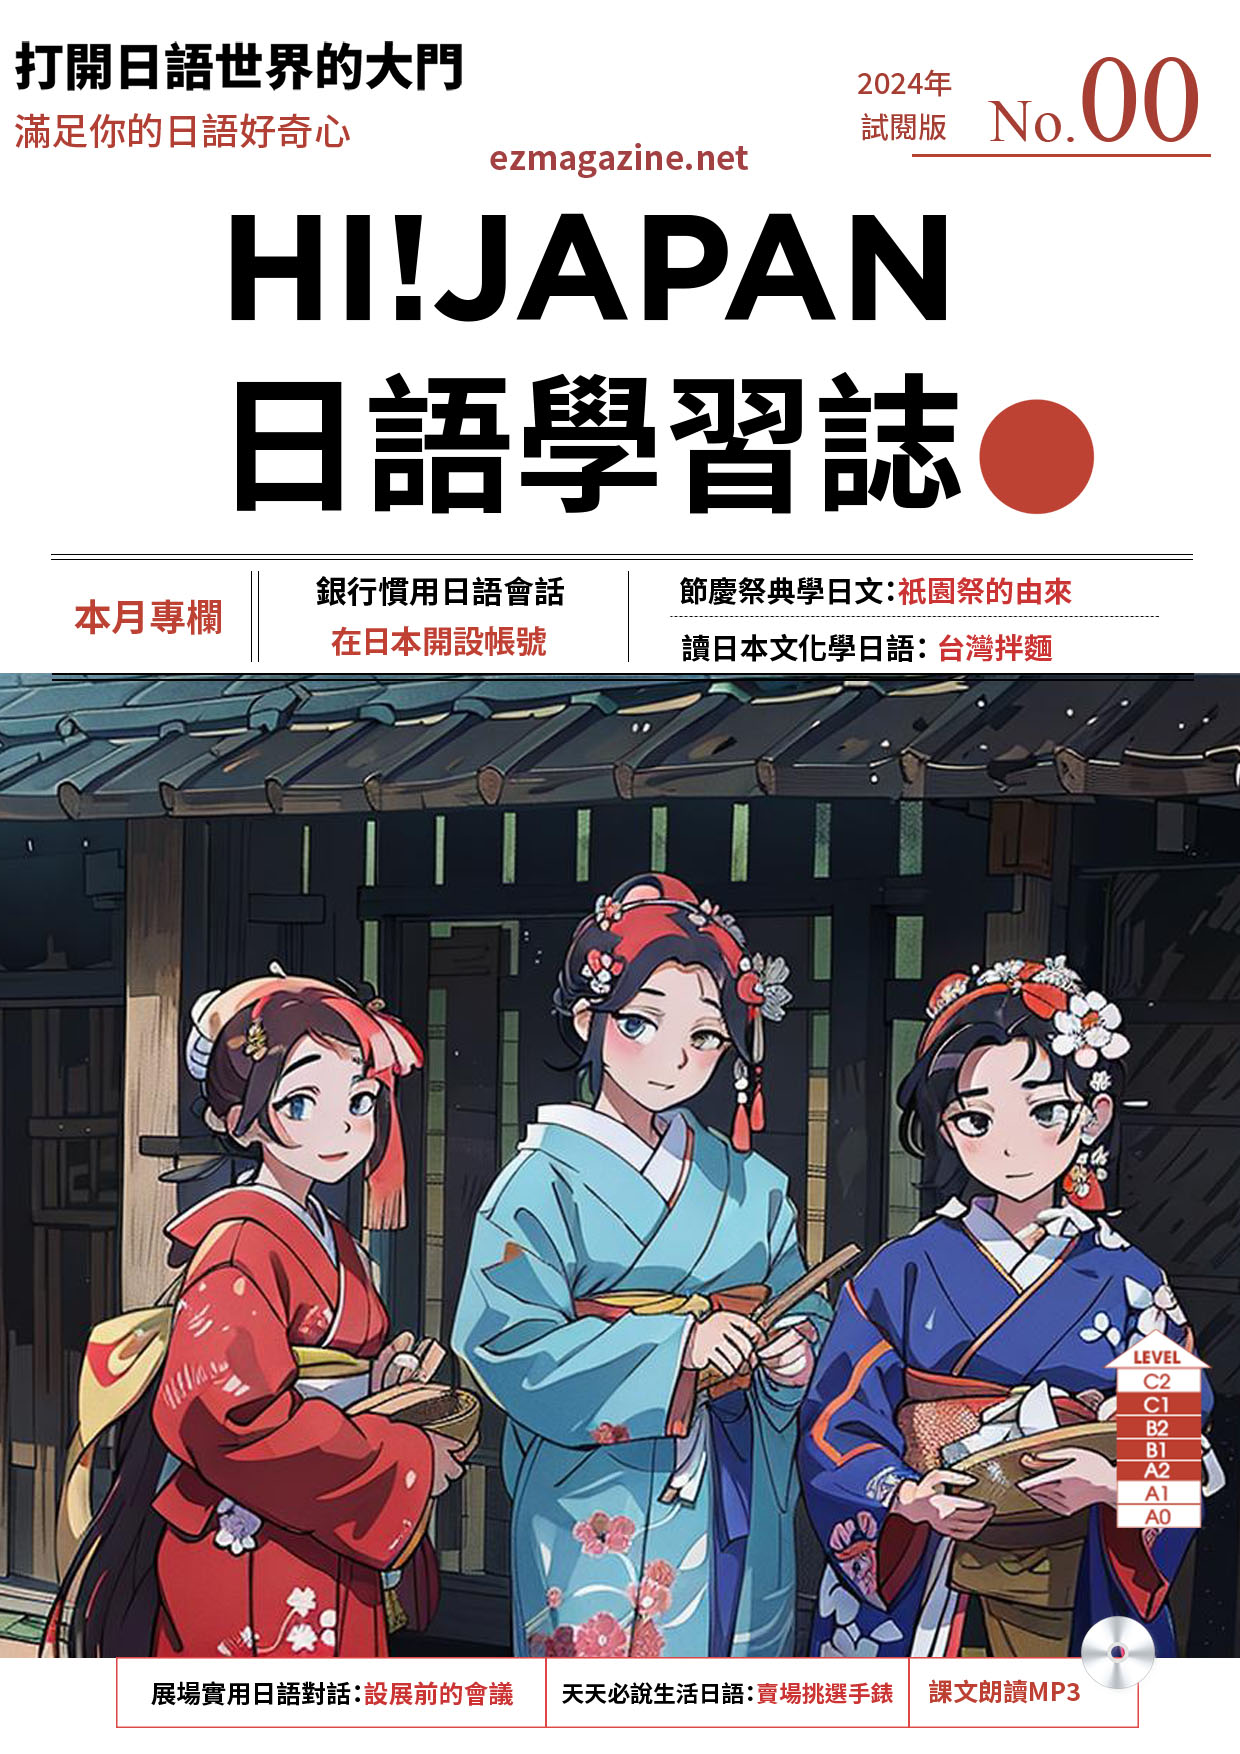 HI!JAPAN日語學習誌-全新插圖封面體驗版